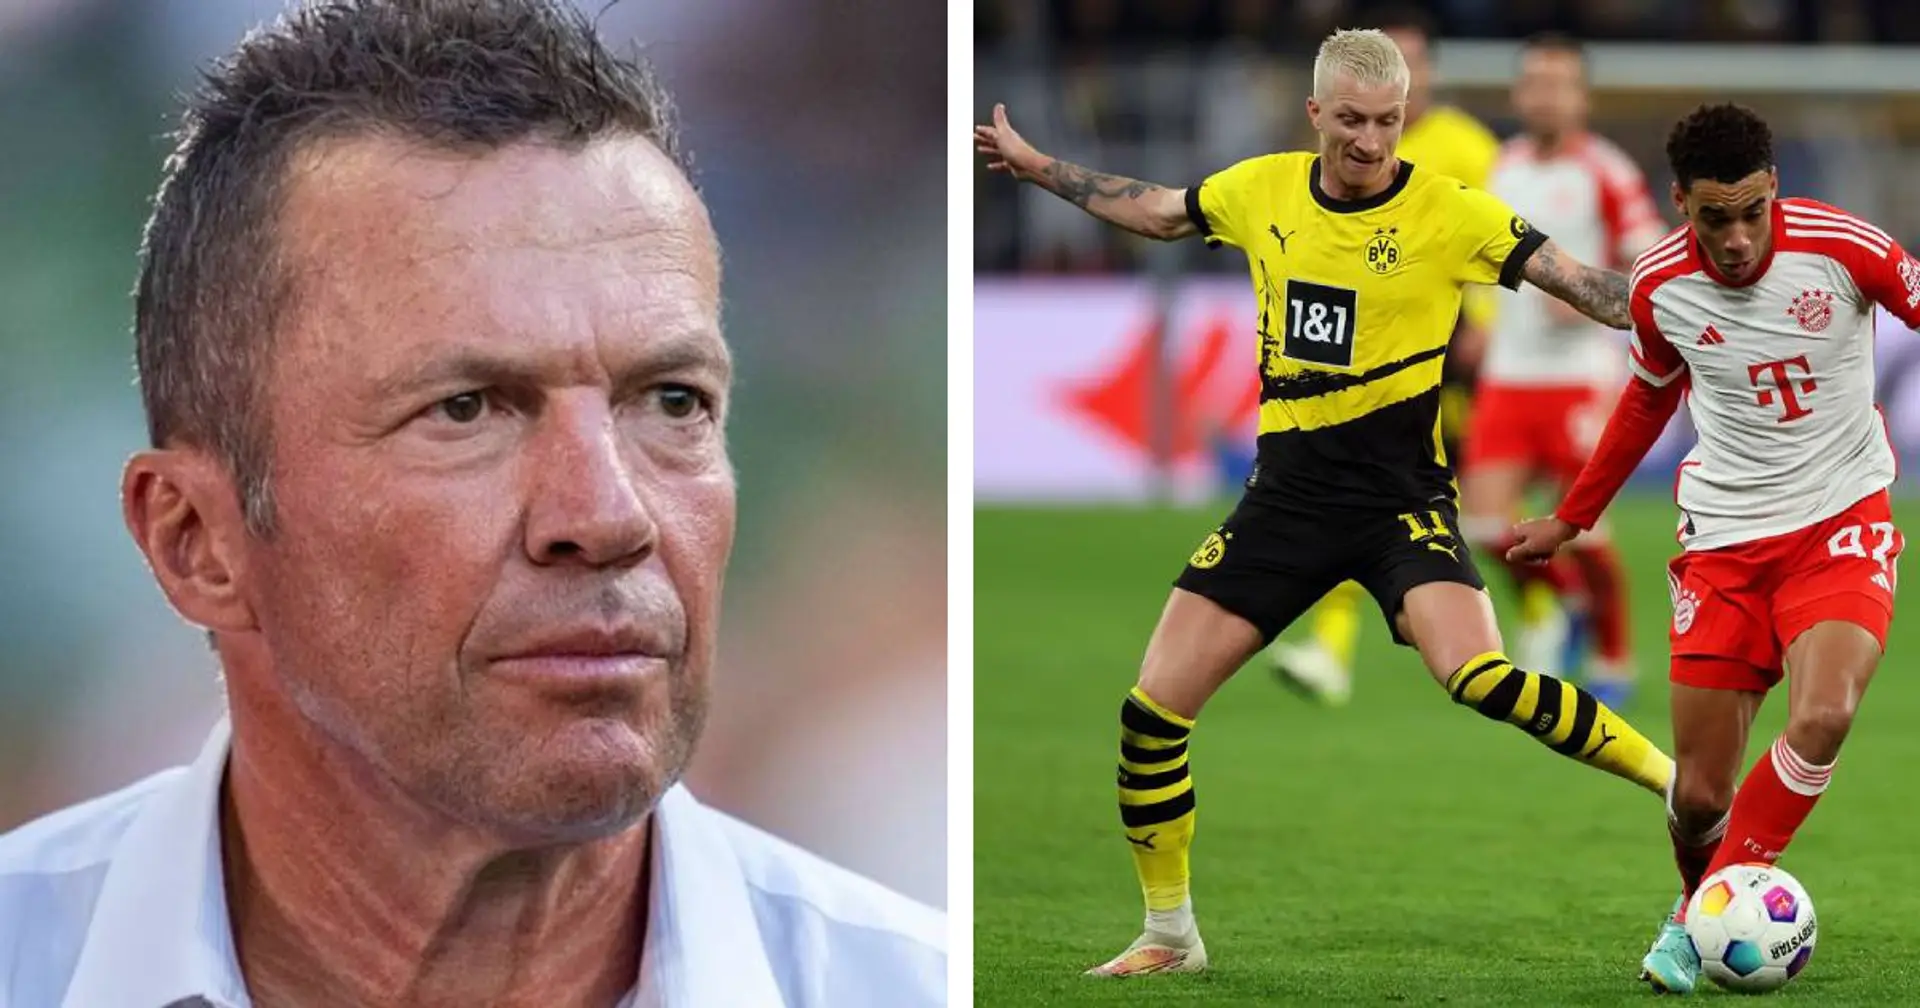 "Bei Dortmund stottert der Motor...": Matthäus gibt seine Prognose für Topspiel gegen Dortmund ab